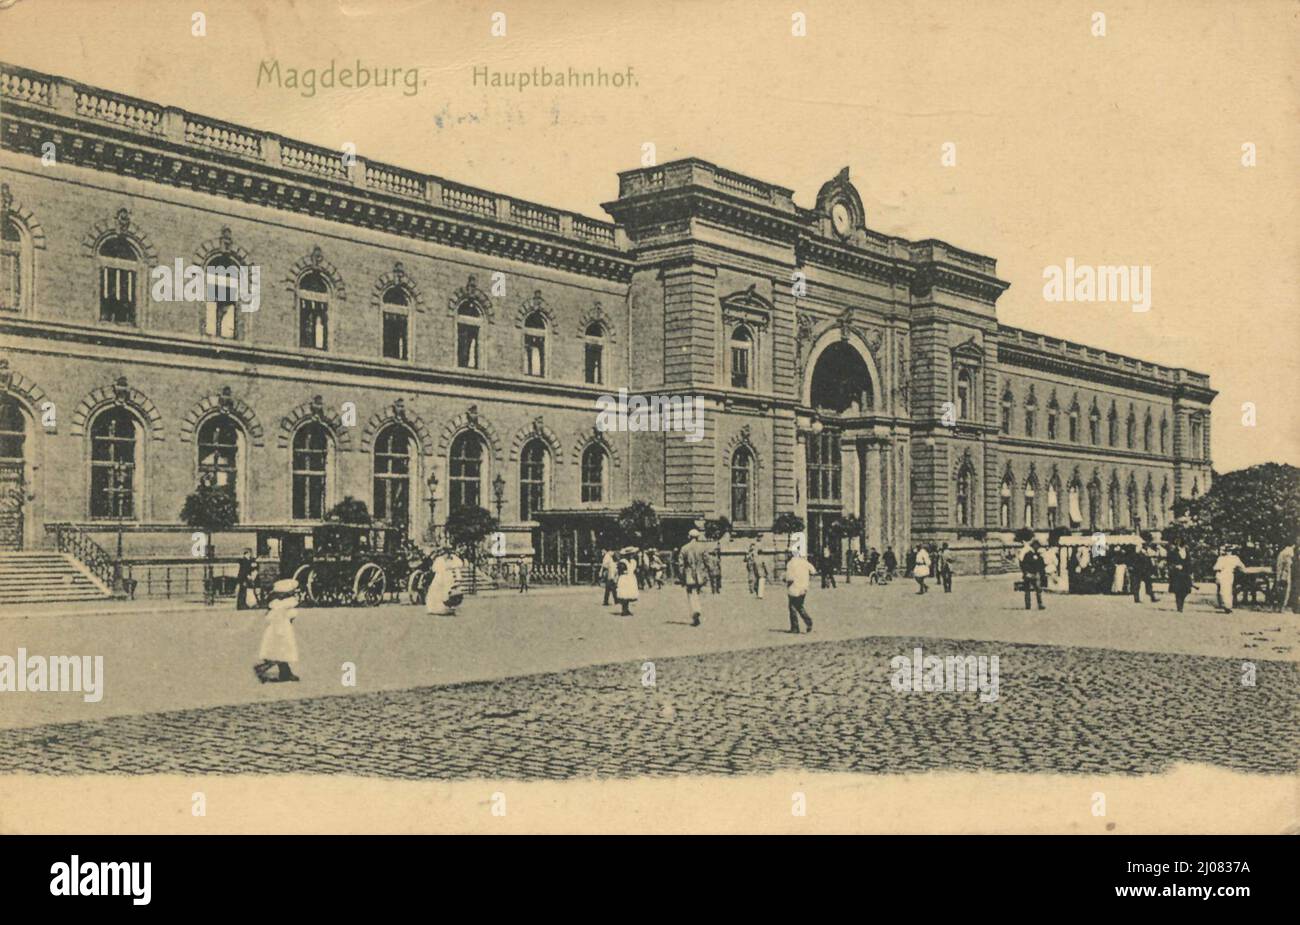 Hauptbahnhof in Magdeburg, Sachsen-Anhalt, Deutschland, Ansicht um ca 1910, digitale Reproduktion einer historischen Postkarte, public domain, aus der damaligen Zeit, genaues Datum unbekannt Stock Photo